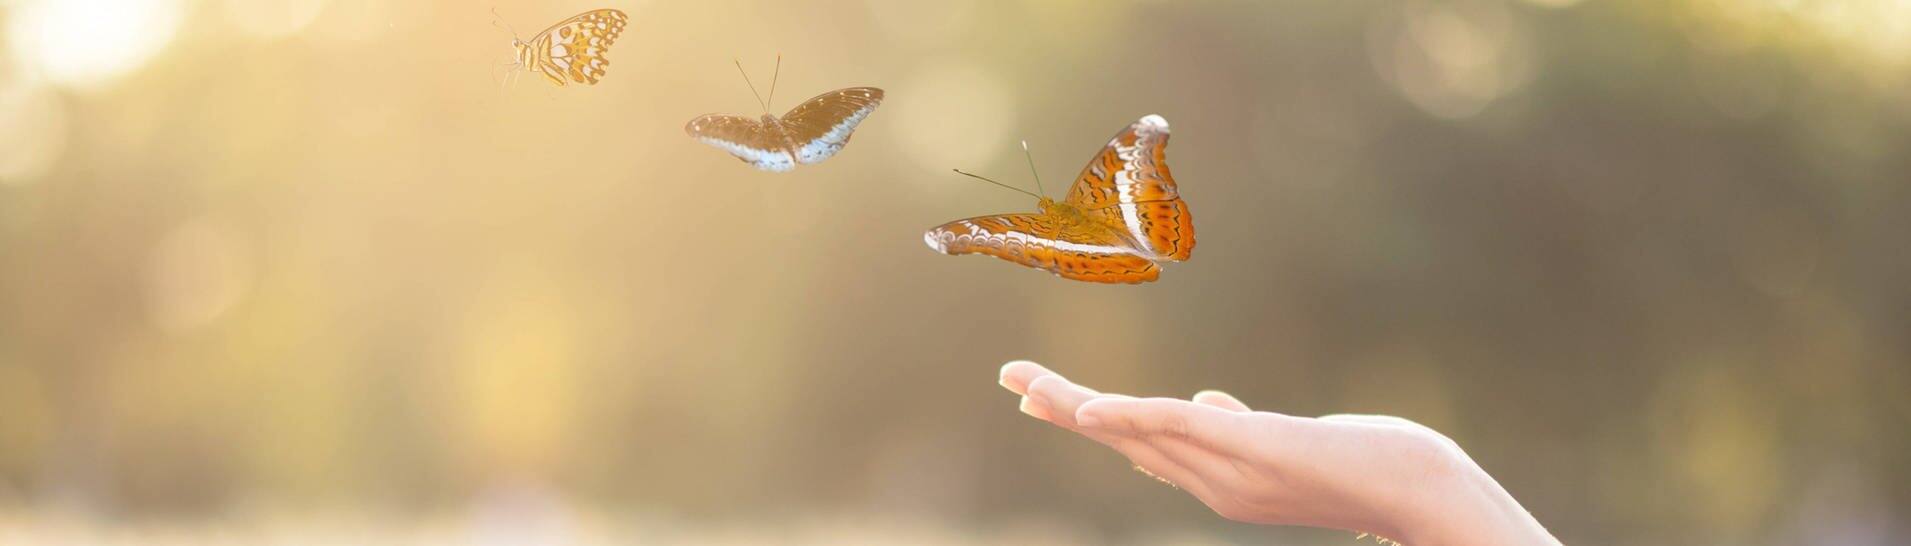 Schmetterlinge fliegen von einer ausgestreckten Hand